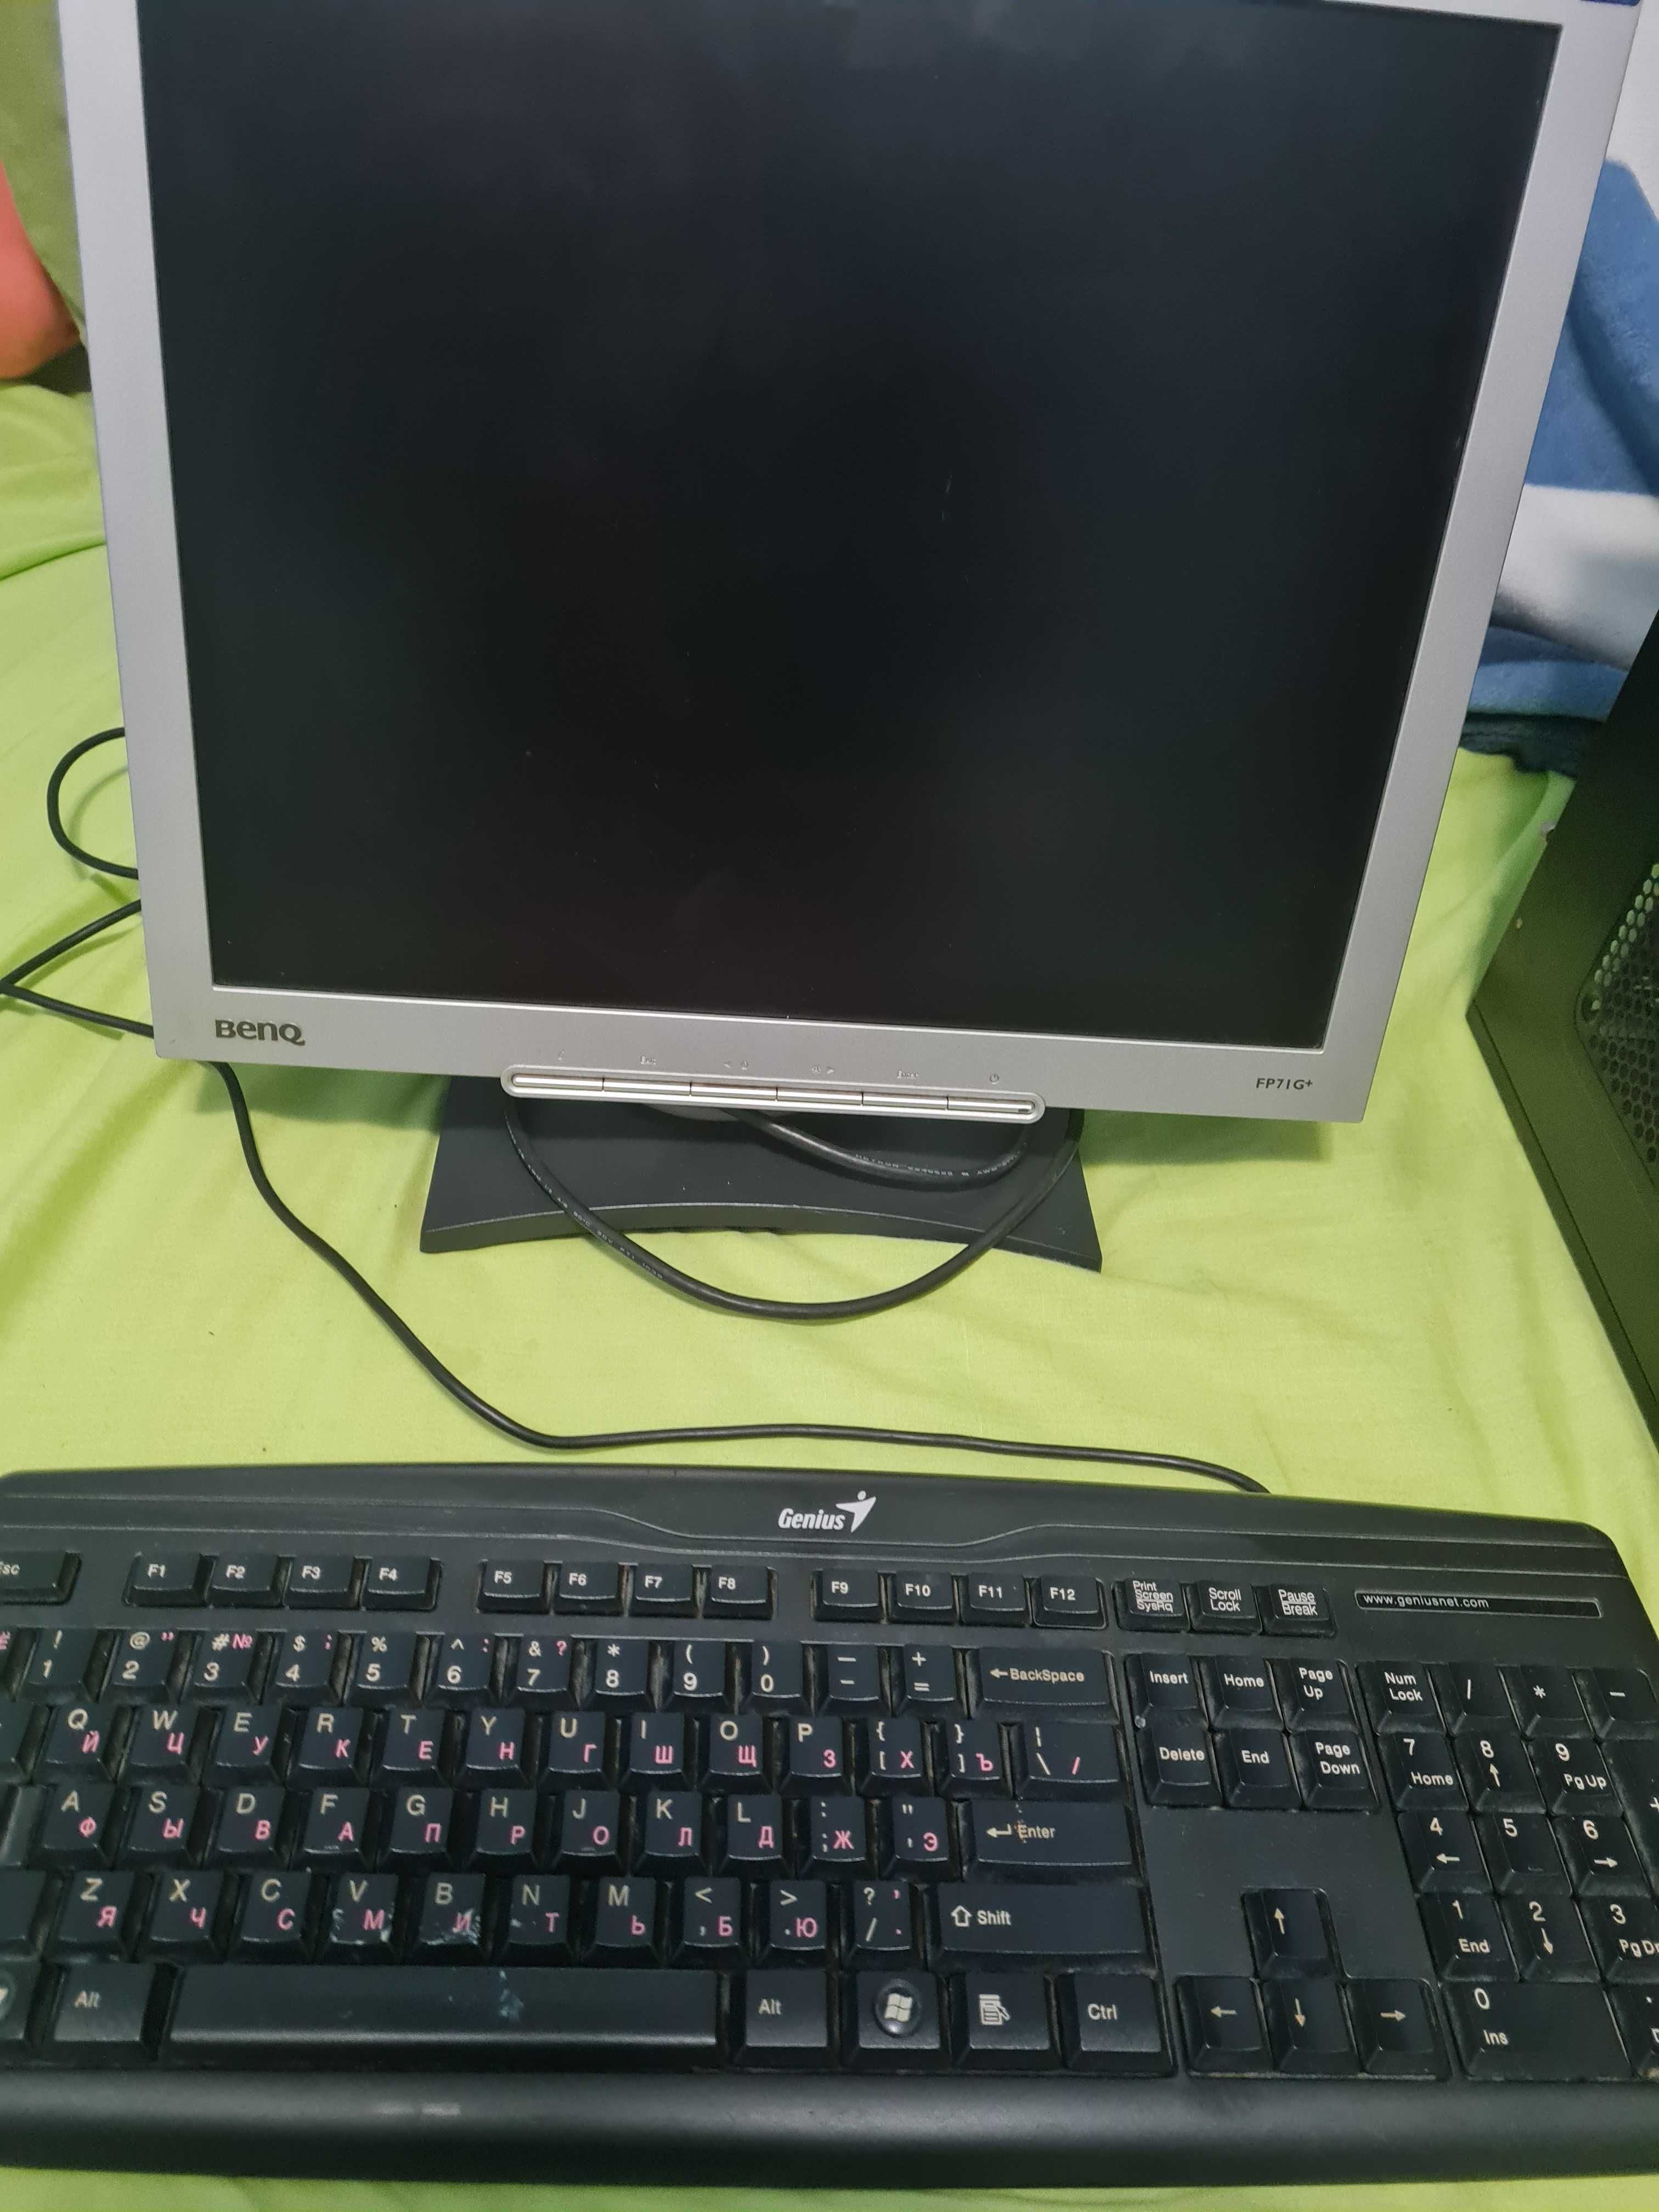 unitate pc complecta monitor si tastatura